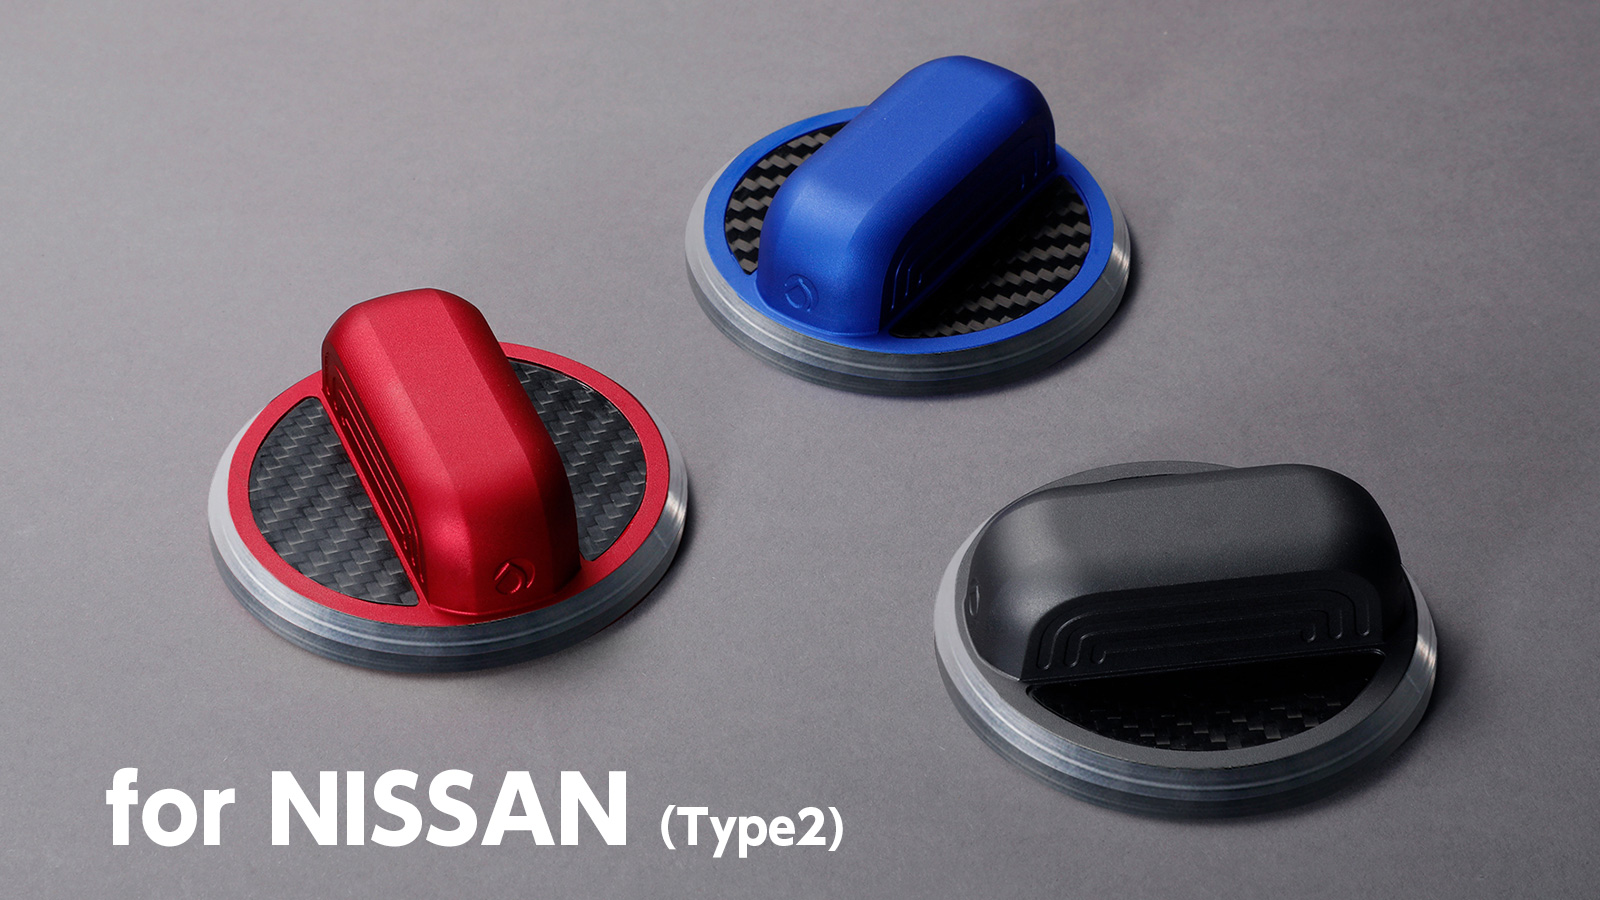 フューエルキャップカバー 日産 NISSAN 用 燃料キャップカバー Aluminum Fuel Cap Cover for NISSAN アルミの塊 - 1